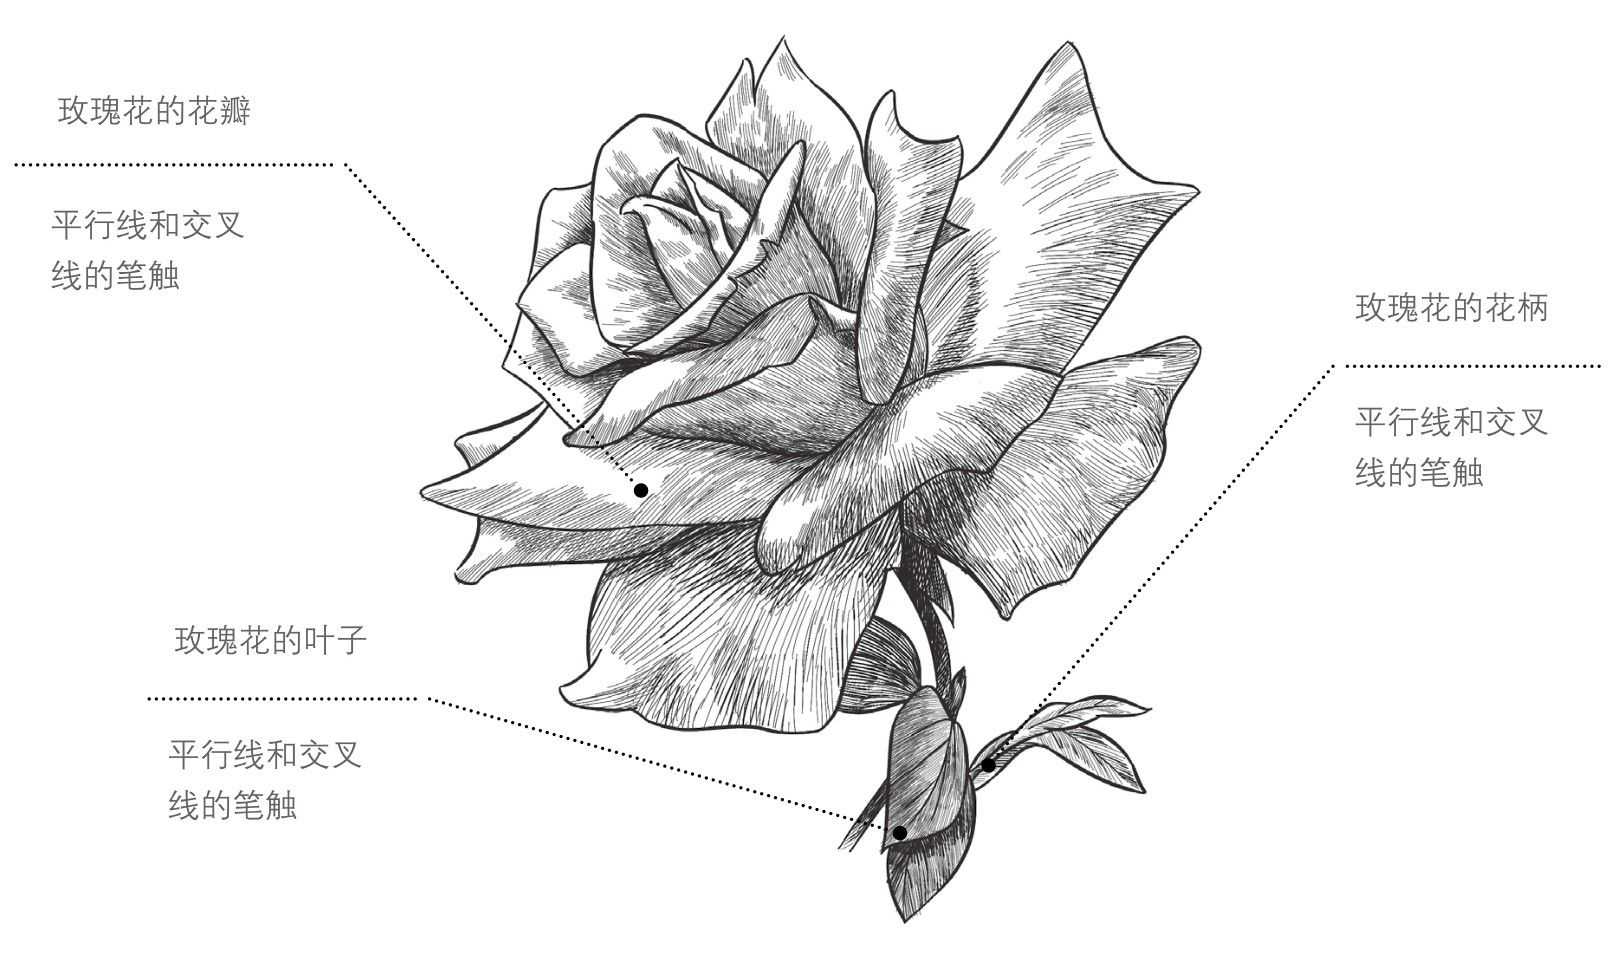 玫瑰花画法步骤花朵图片